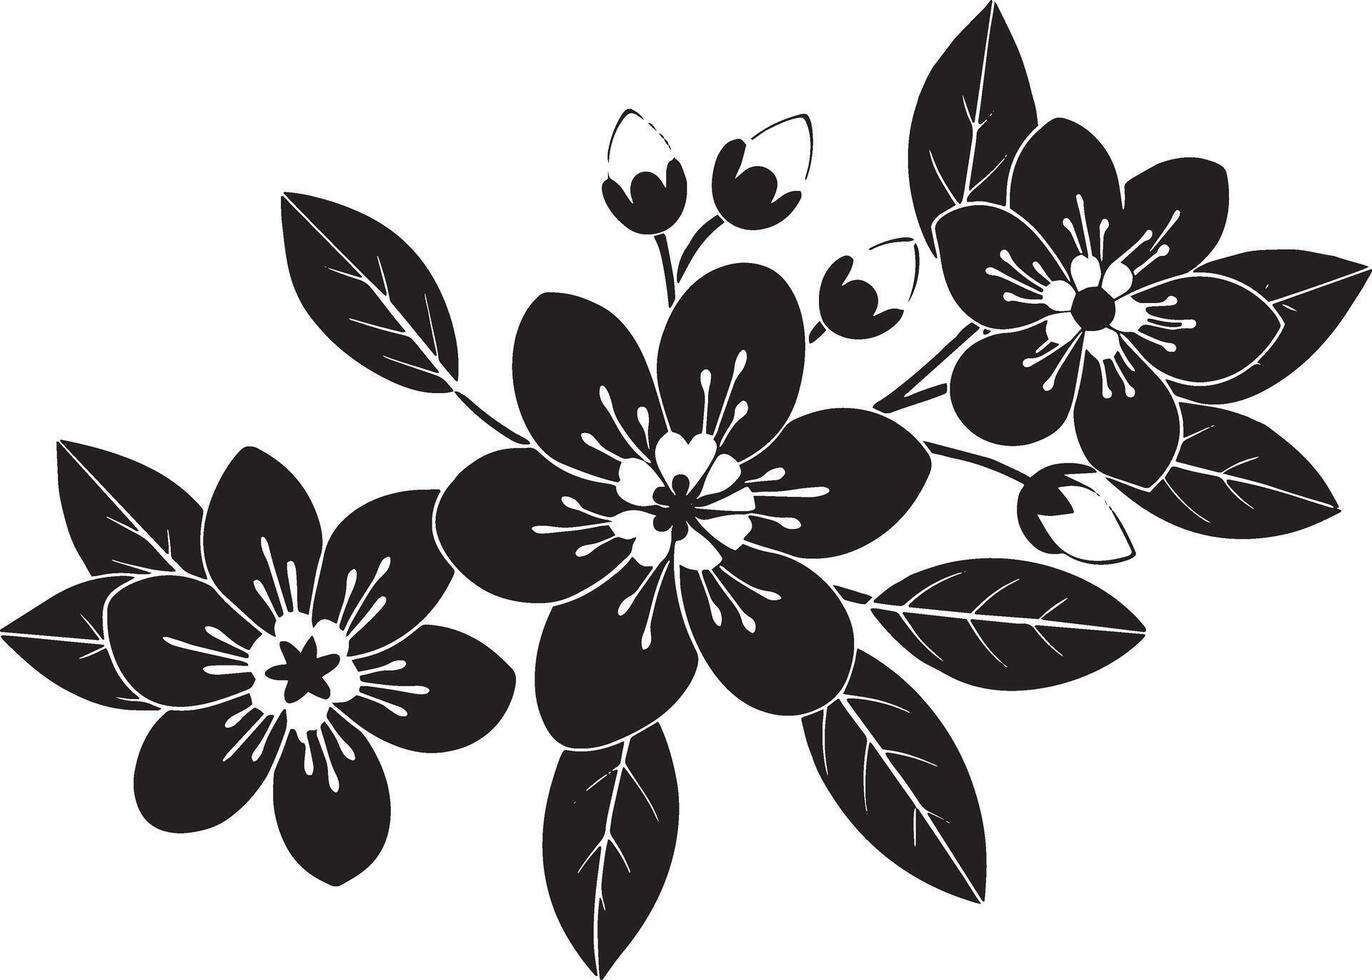 svart och vit illustration av blommor. isolerat på vit bakgrund. vektor